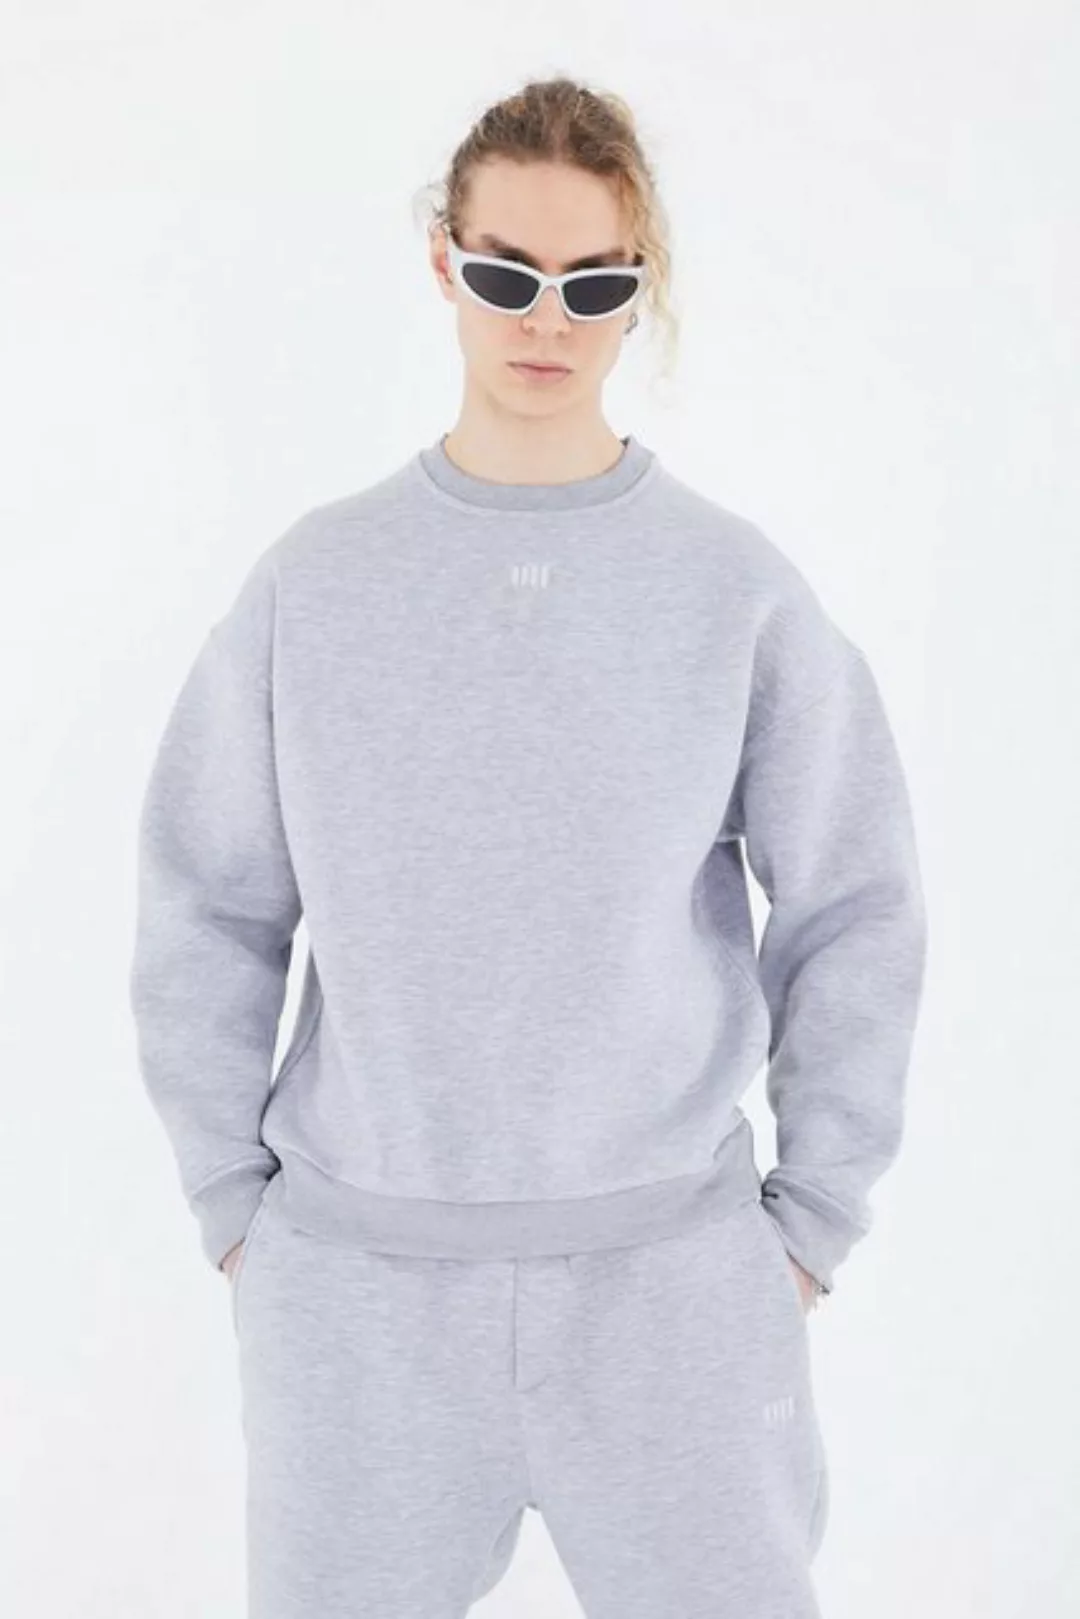 COFI Casuals Sweatshirt Basic Sweatshirt Oversize Fit Pullover Unisex günstig online kaufen